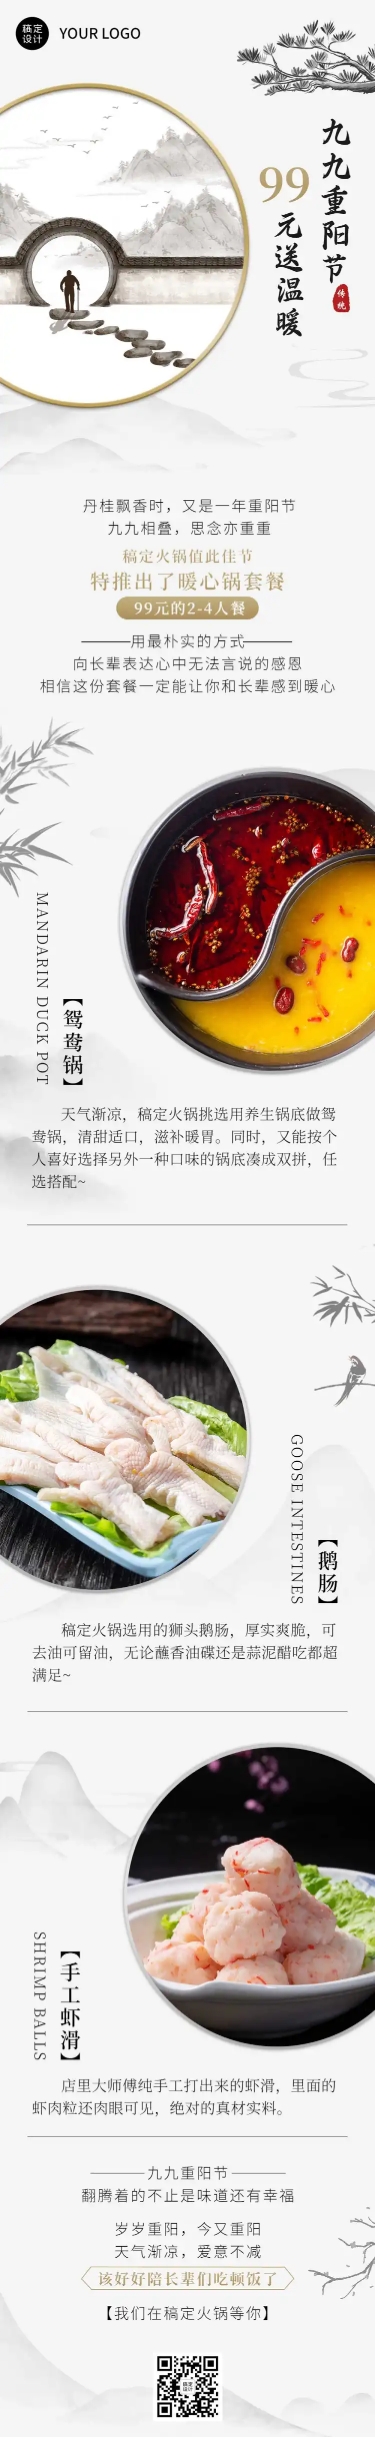 餐饮美食重阳节产品营销中国风文章长图预览效果